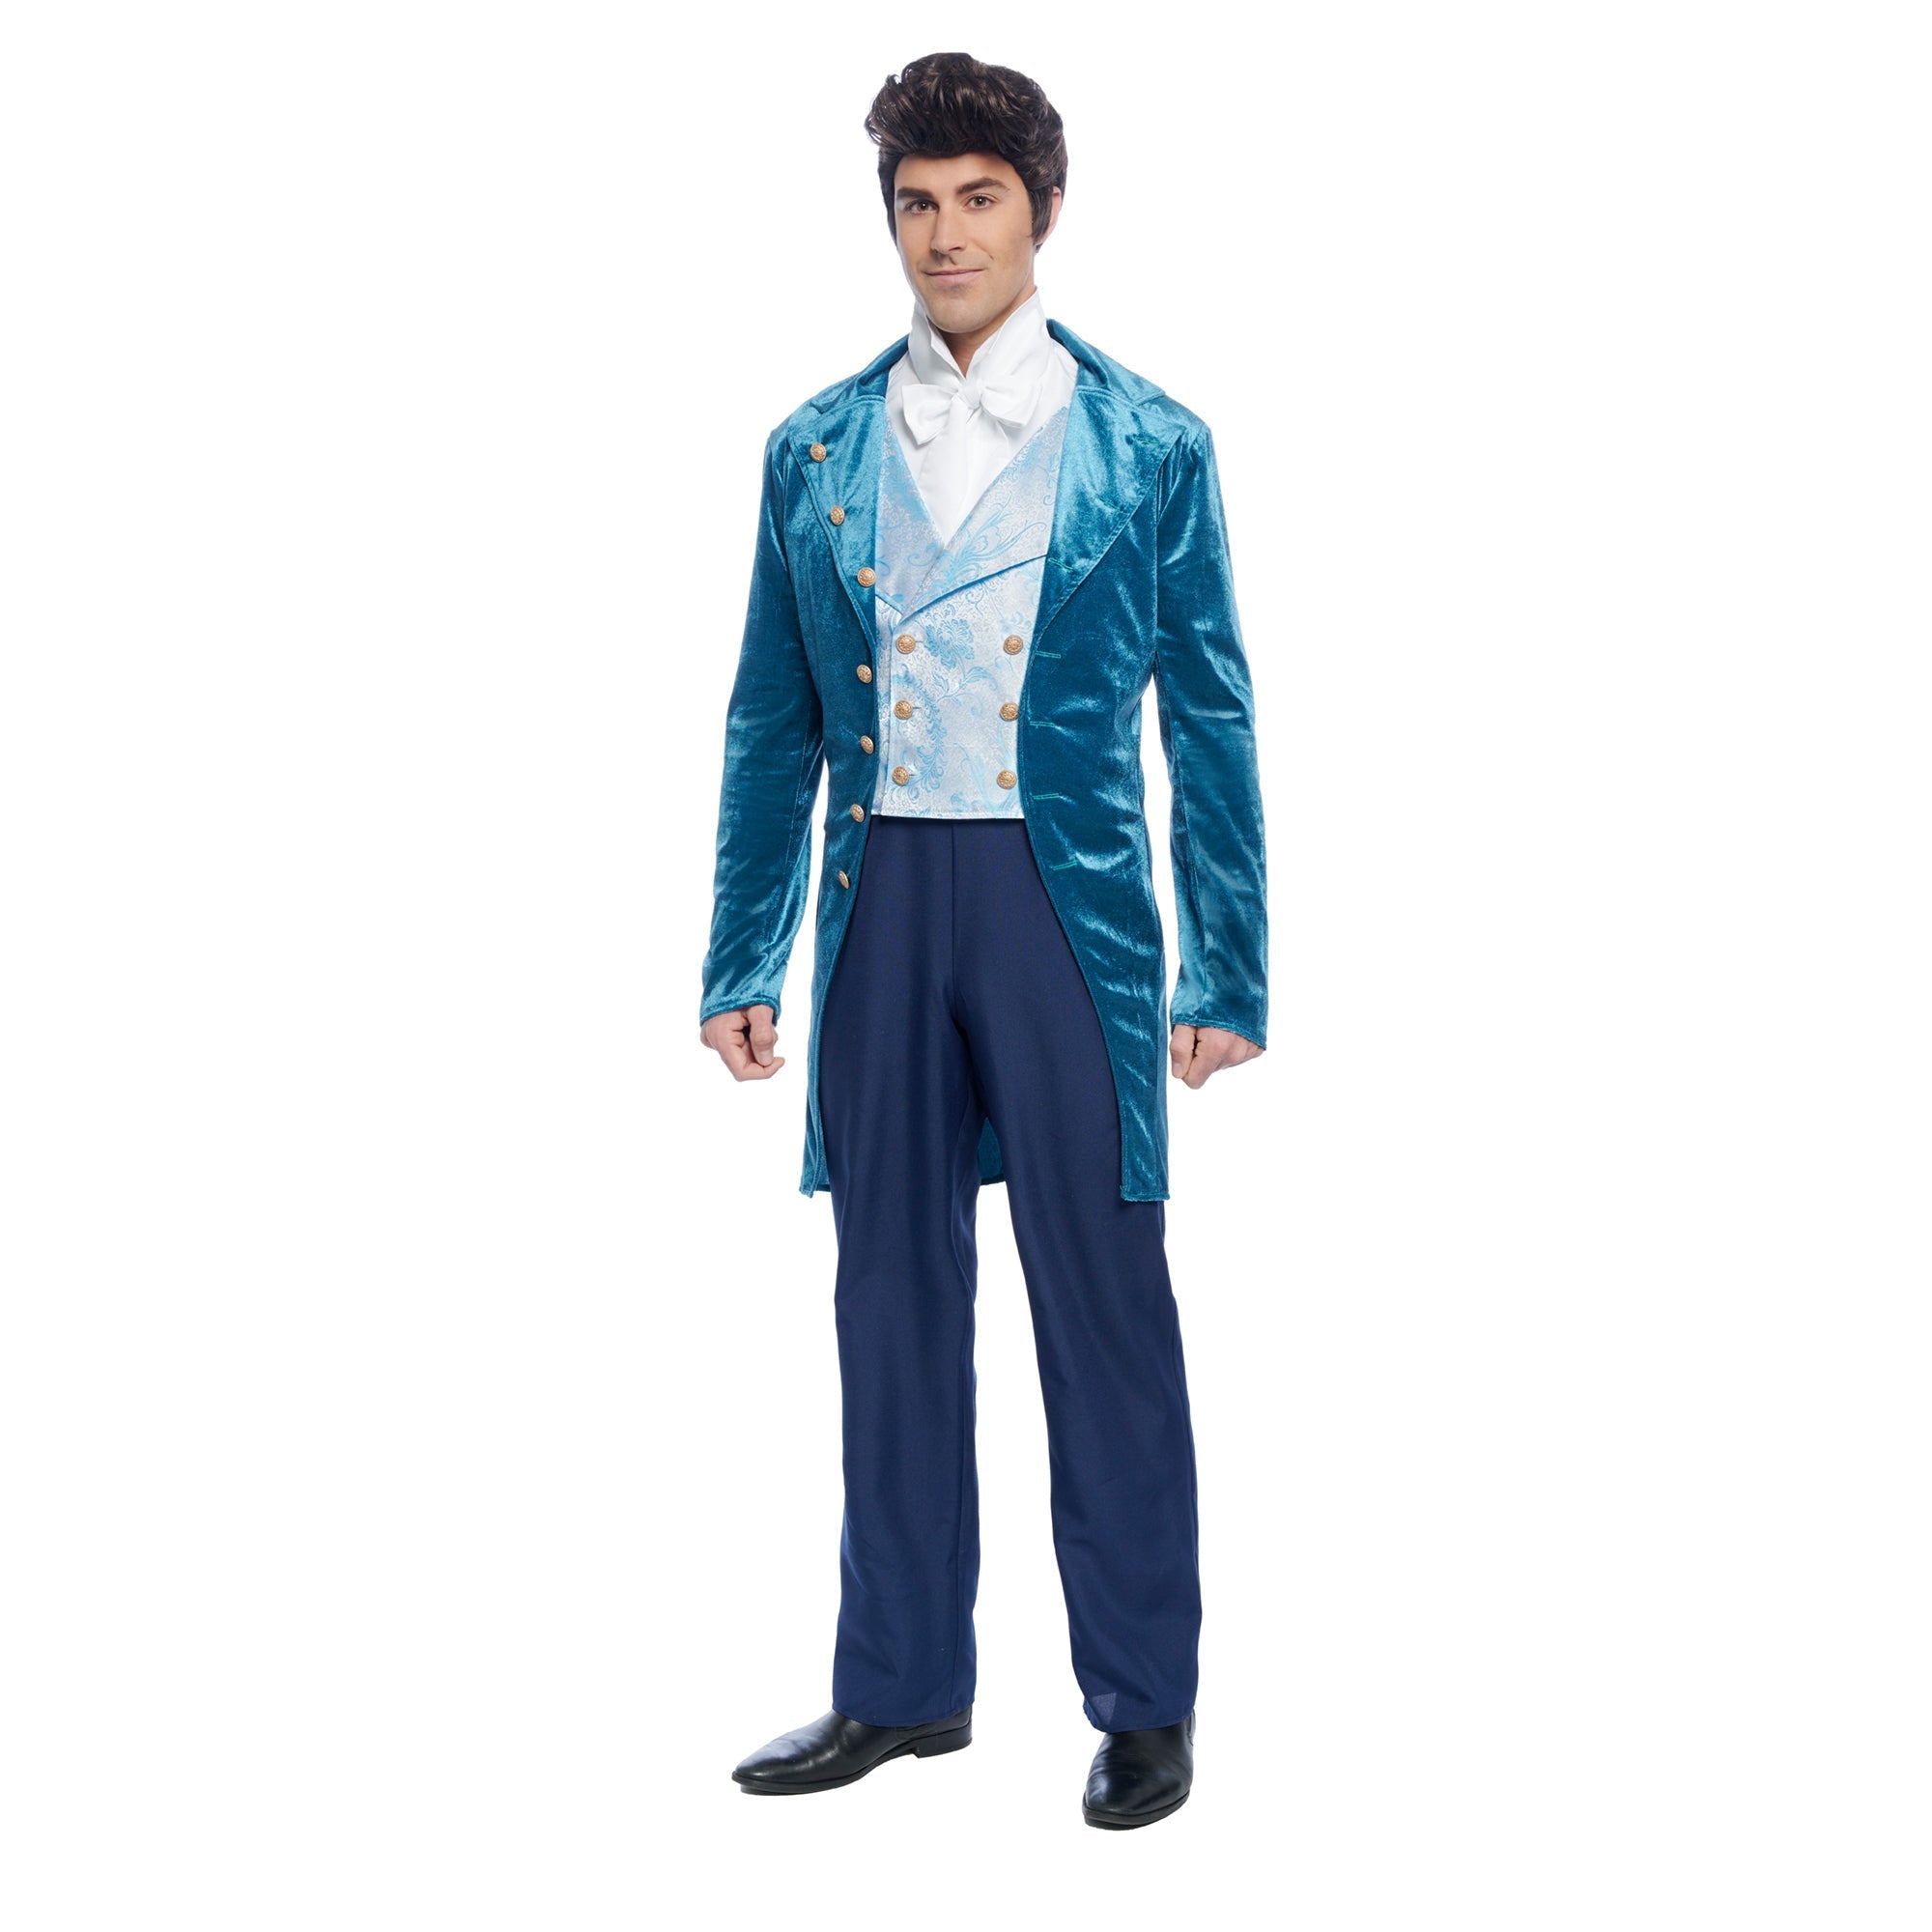 Regency Gentleman Costume for Adults, Blue Tailcoat, Bridgerton